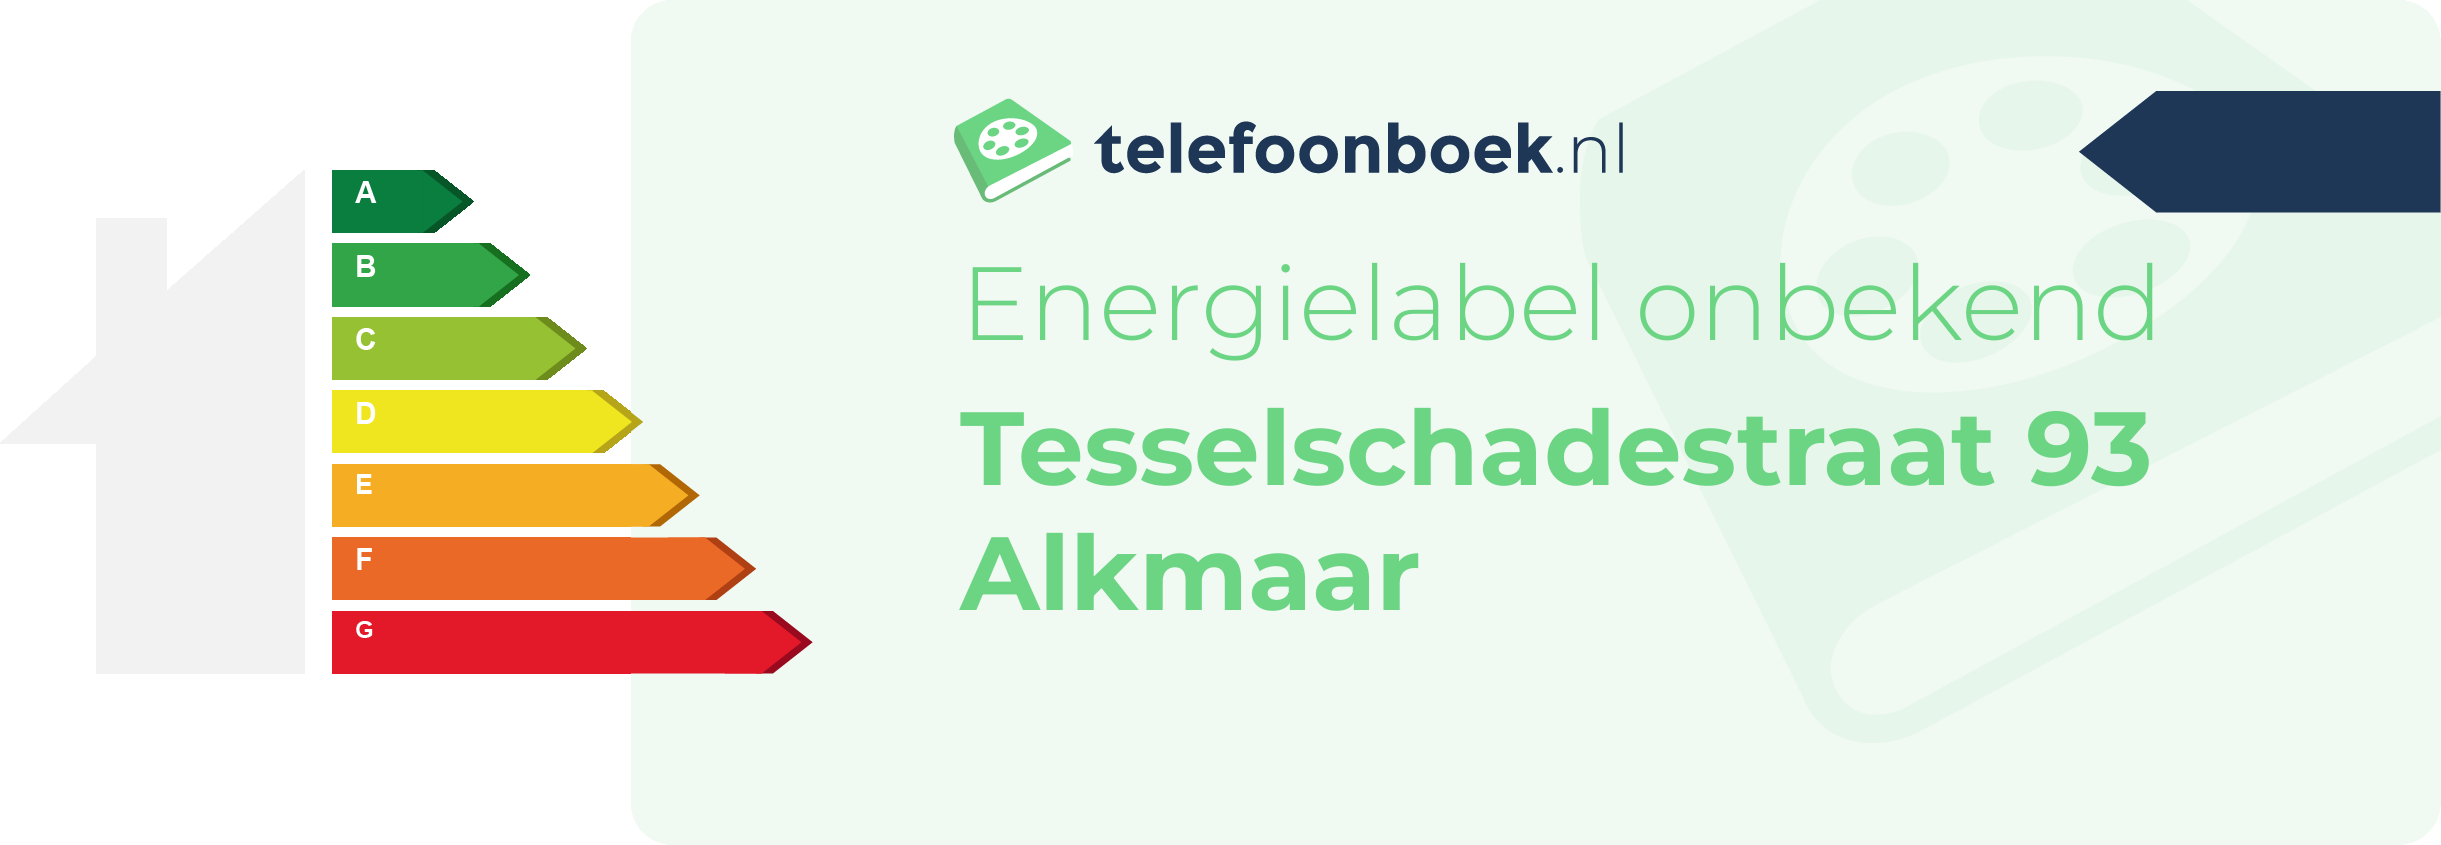 Energielabel Tesselschadestraat 93 Alkmaar